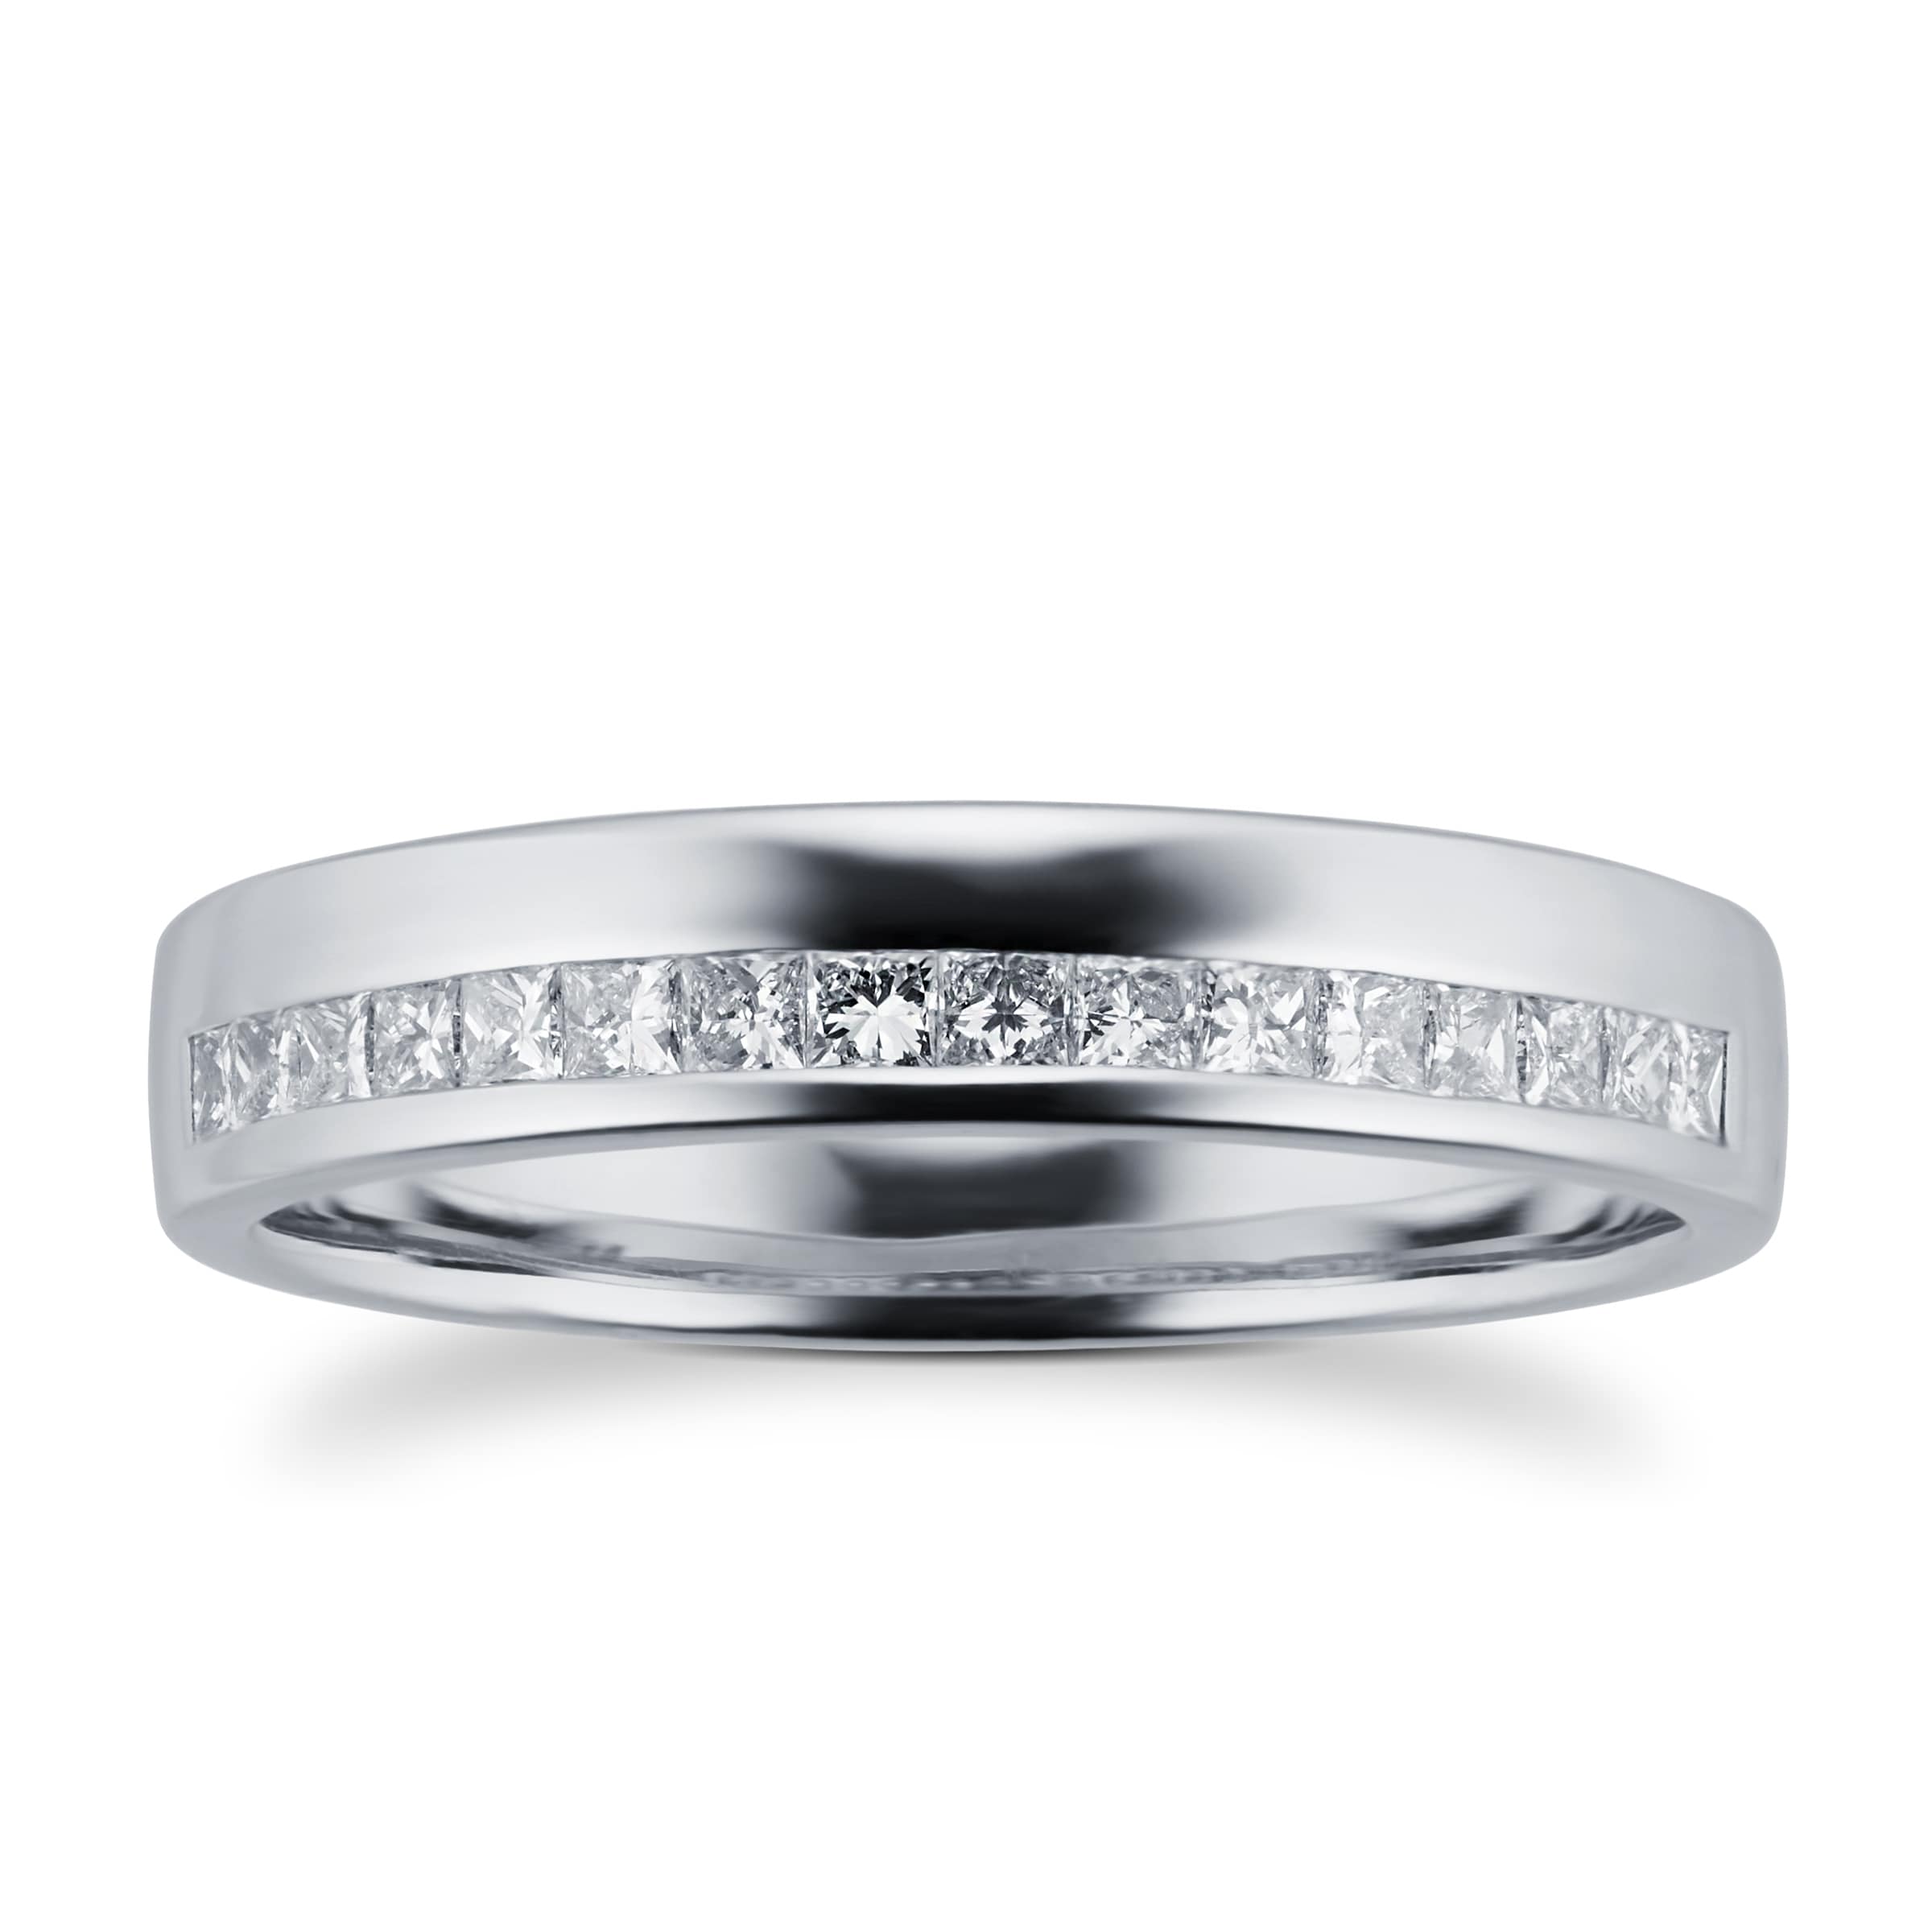 Princess Cut 0.33 Total Carat Weight Diamond Ladies Wedding Ring Set In Platinum - Ring Size N